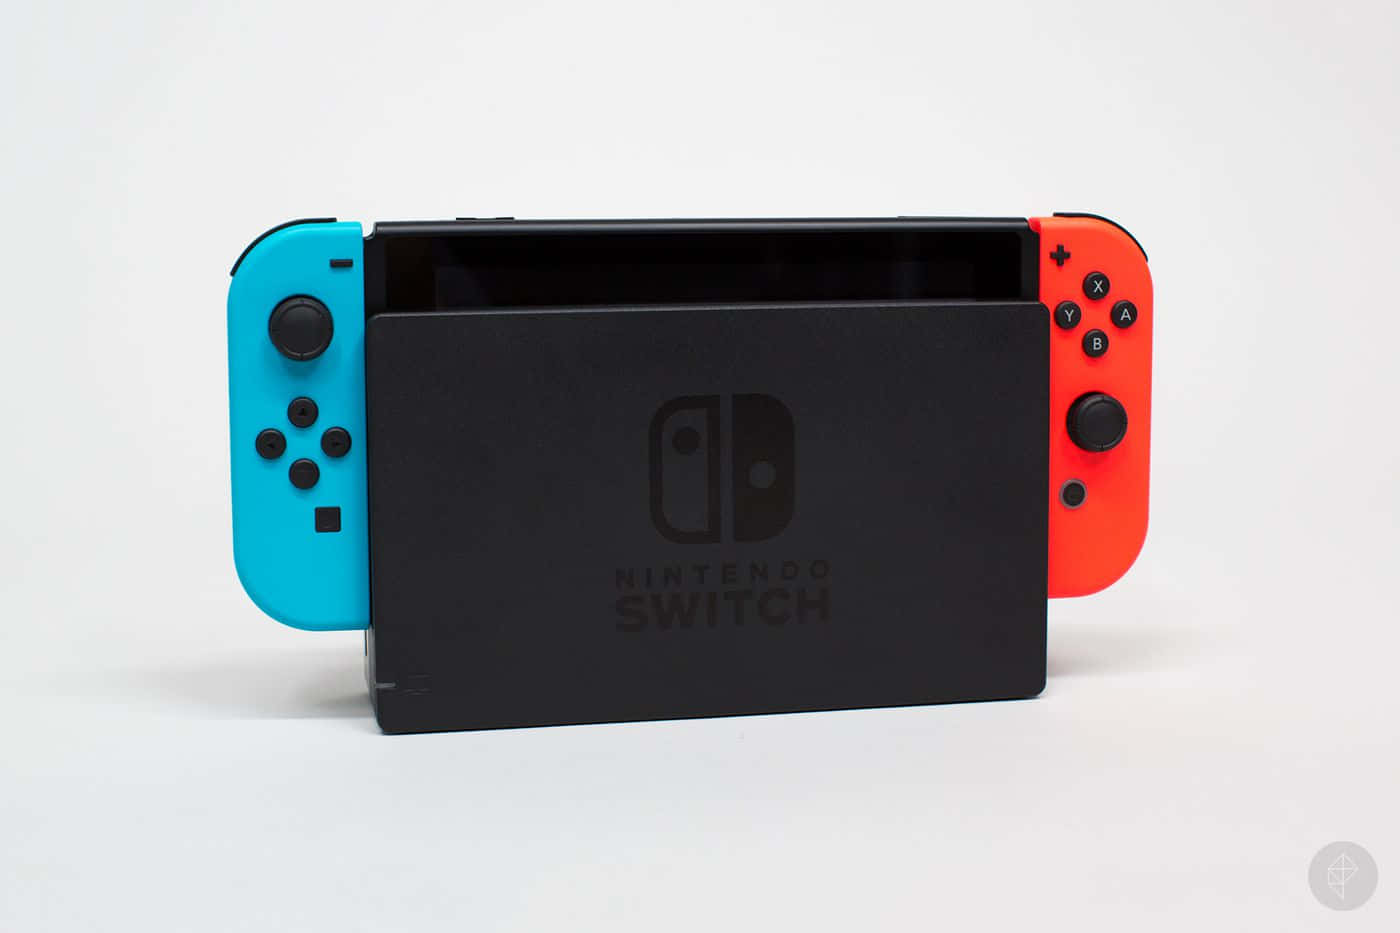 Oplev den nye generation af gaming med Nintendo Switch.